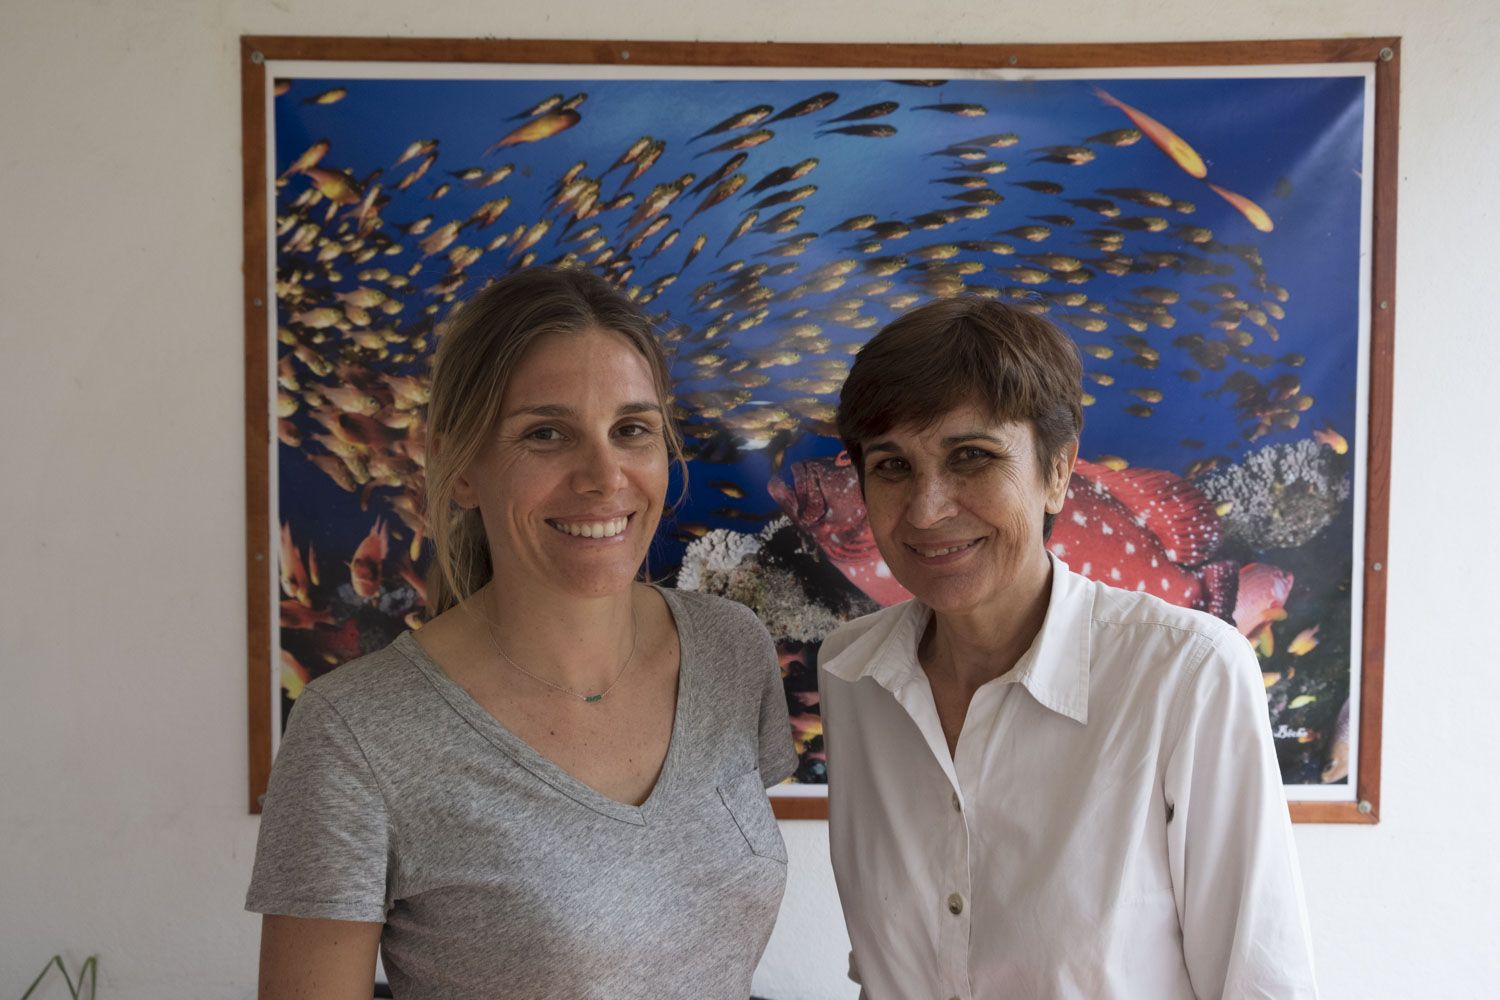 Les deux femmes sont spécialistes des coraux. Pascale CHABANET est Directrice de Recherche à l’IRD, et Lola MASSÉ travaille comme responsable scientifique à La Réserve Marine de la Réunion. 